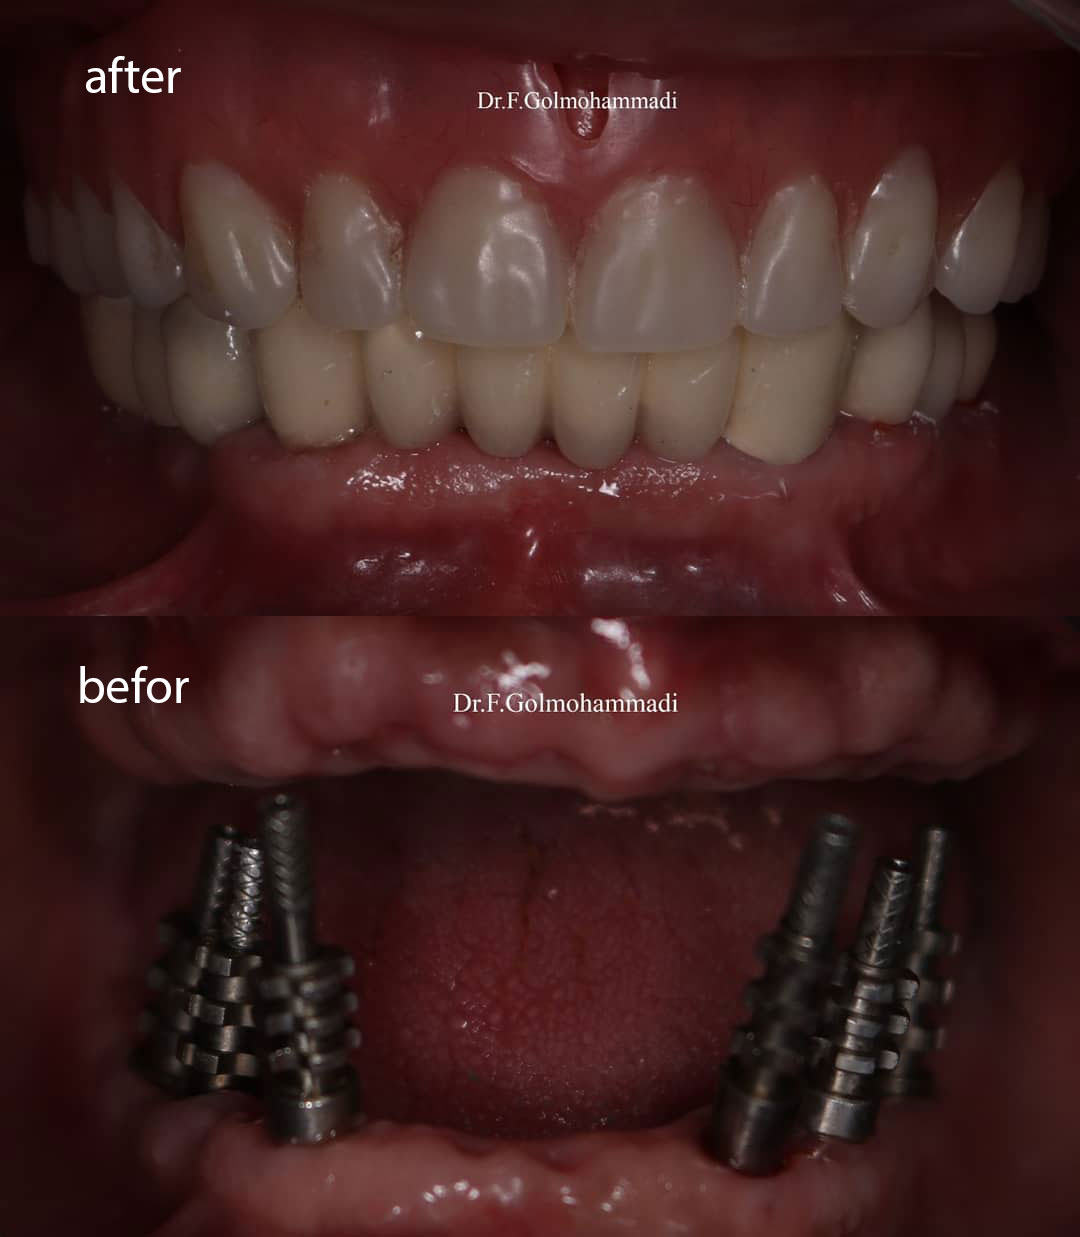 جایگزینی دندانهای فک پایین توسط ایمپلنت و دندانهای فک بالا توسط پروتز کامل. دندانهای فک بالا نیز به زودی توسط ایمپلنت جایگزین میشوند